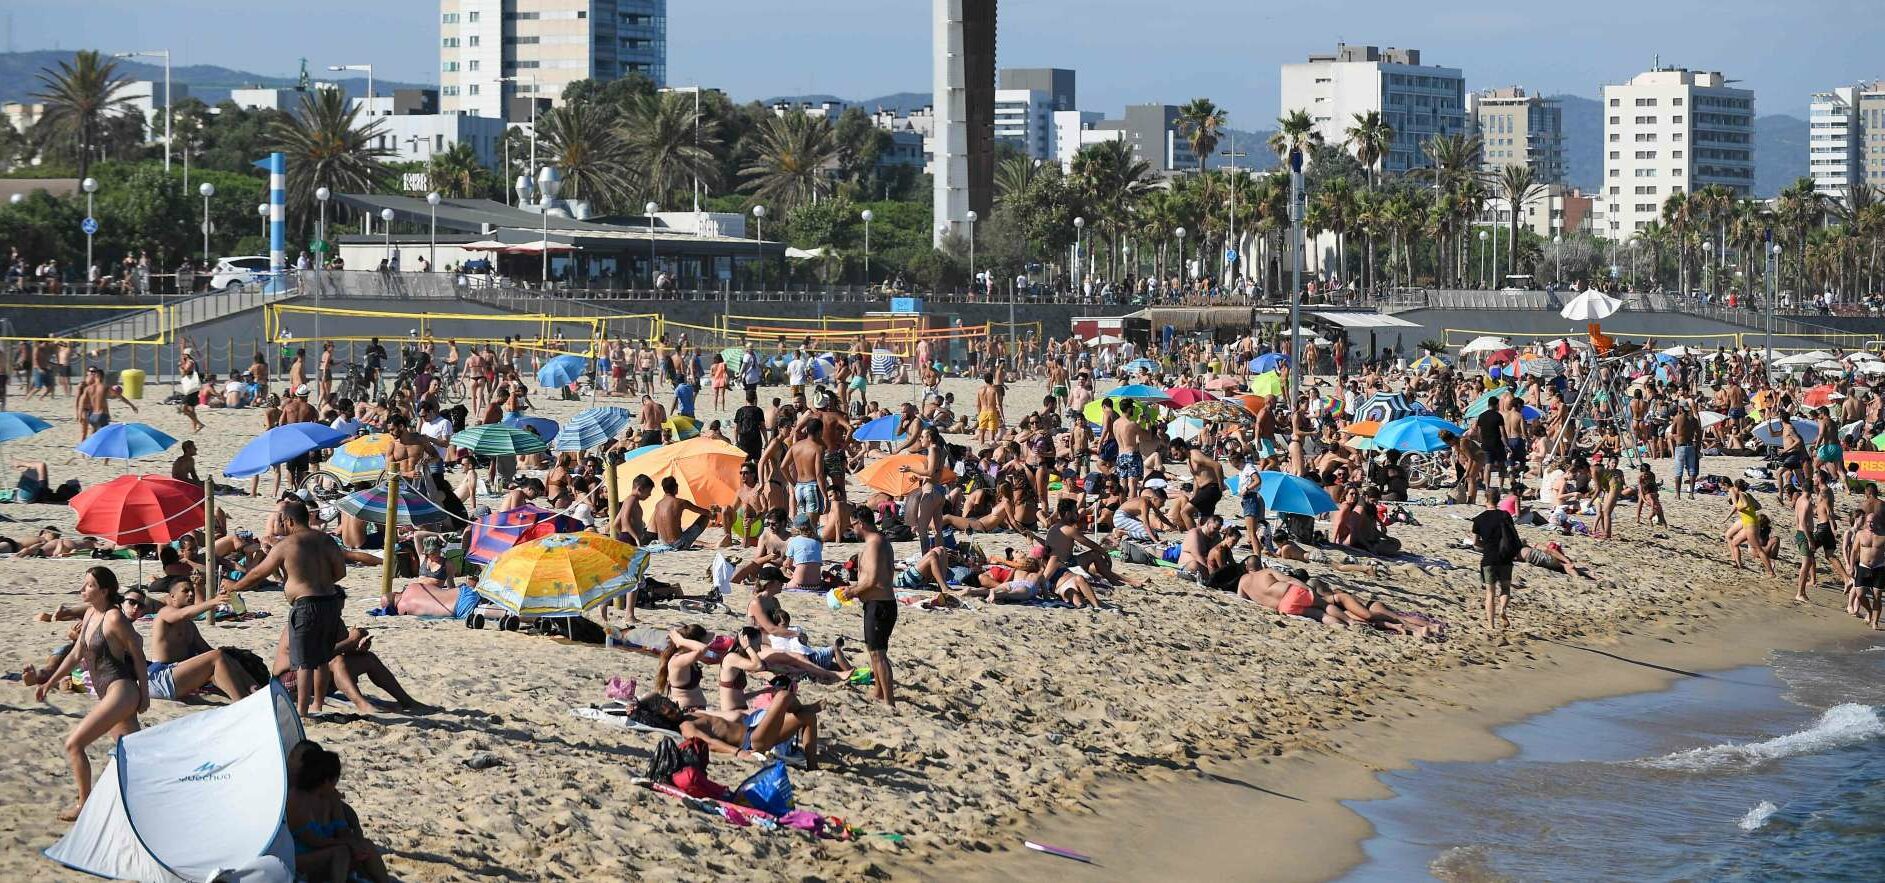 Die spanische Idylle wie hier am Strand von Barcelona trügt: Dem Land stehen wirtschaftlich harte Zeiten bevor.